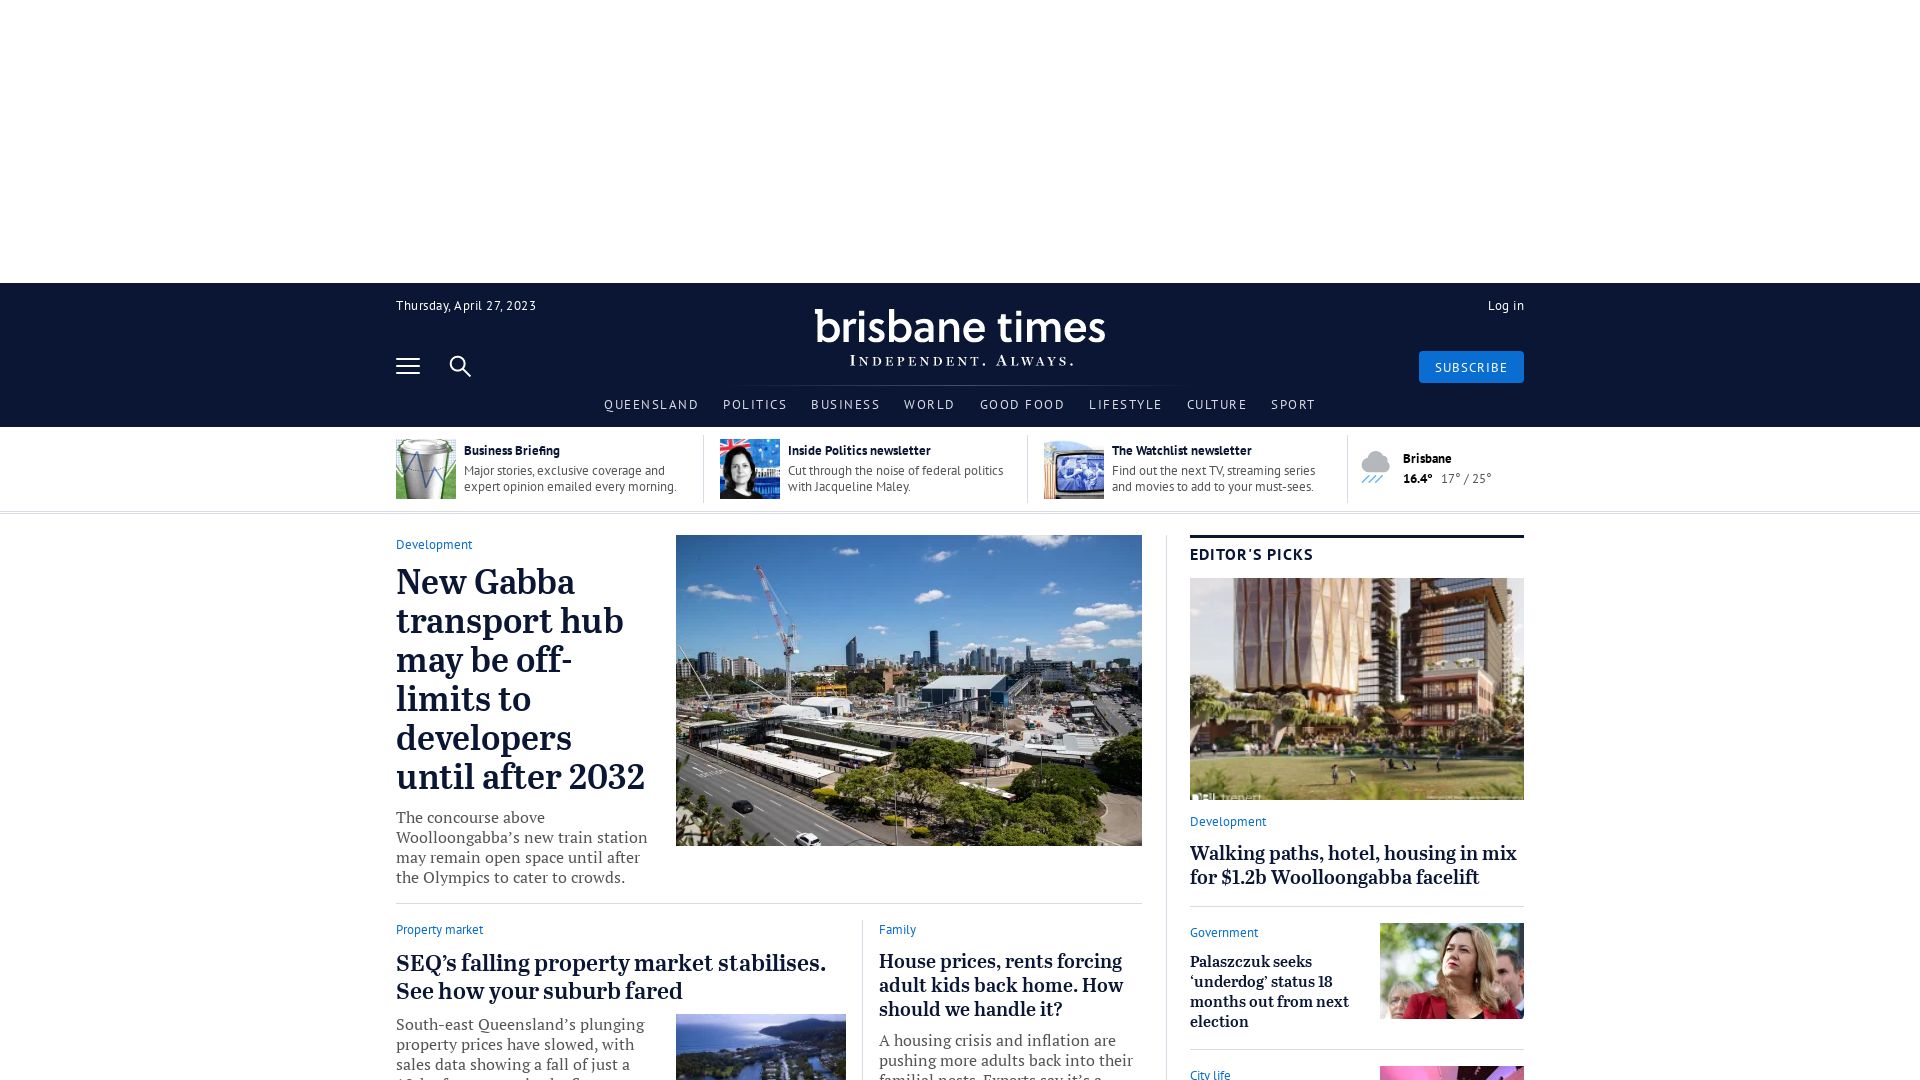 Webseitenstatus brisbanetimes.com.au ist   ONLINE